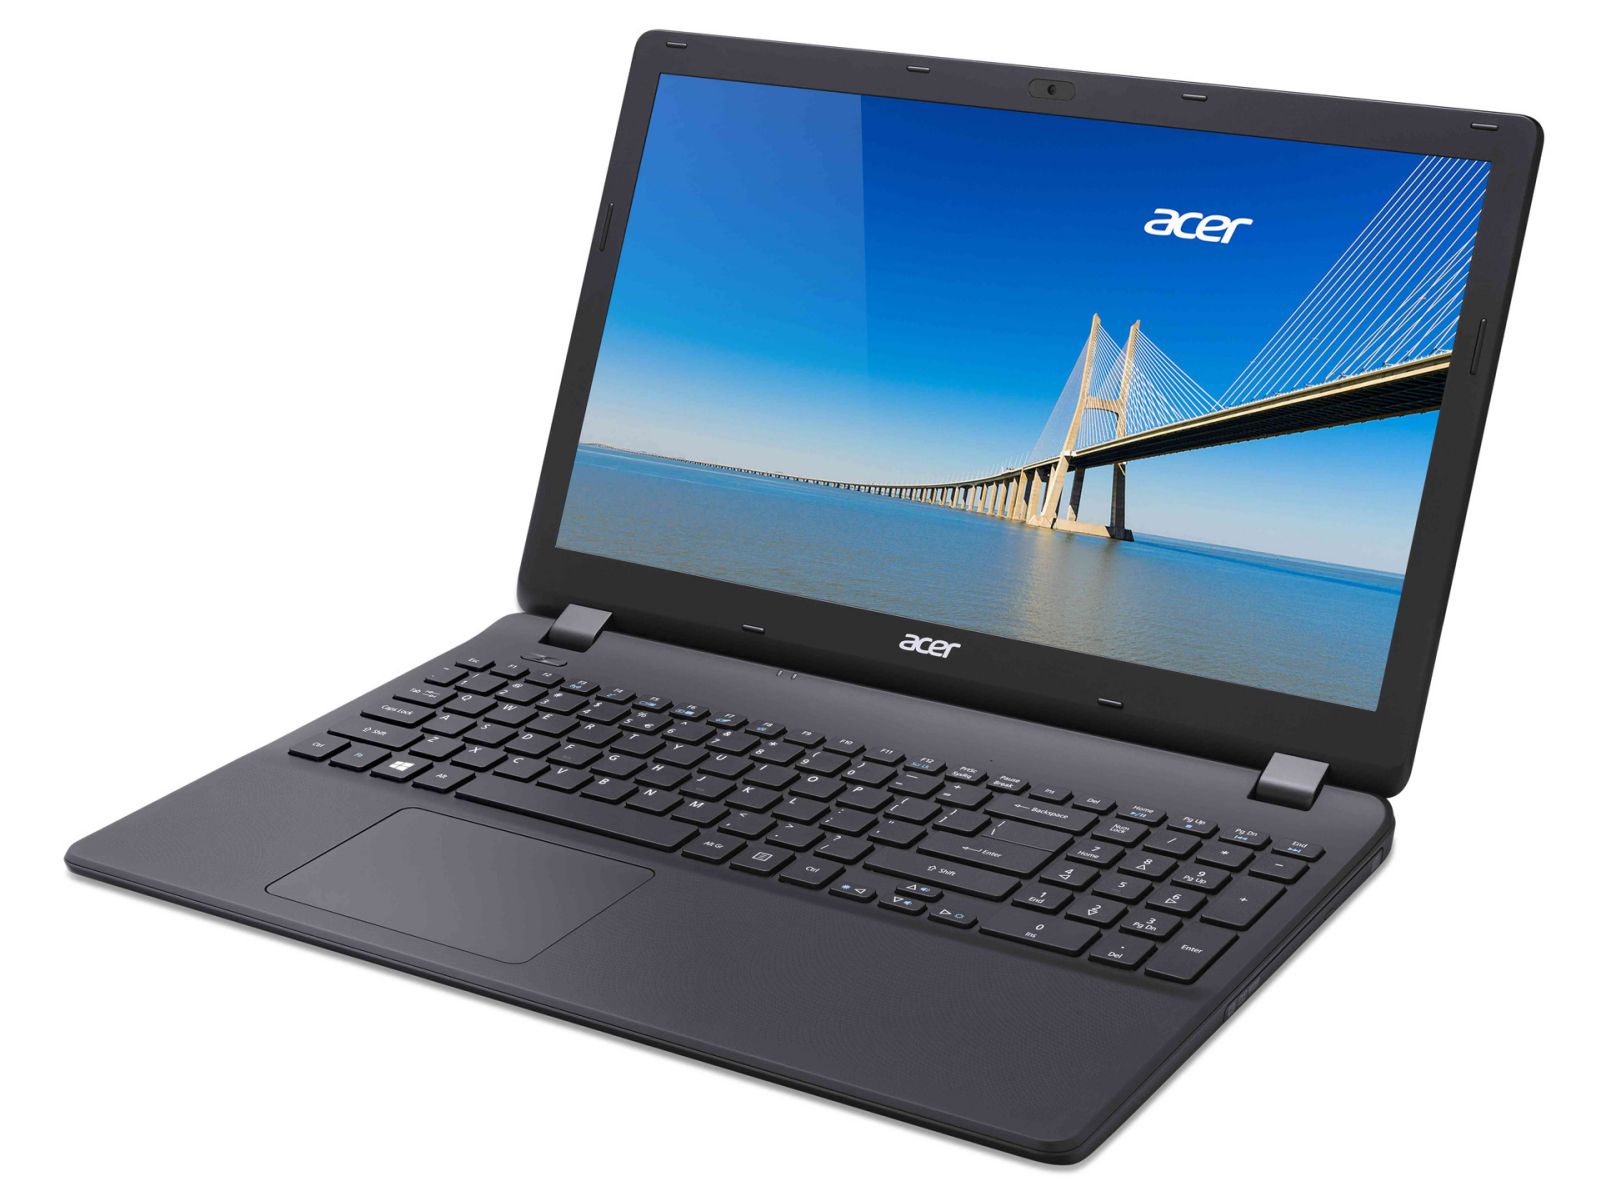 Acer Extensa 2519 Series - Notebookcheck.net External Reviews